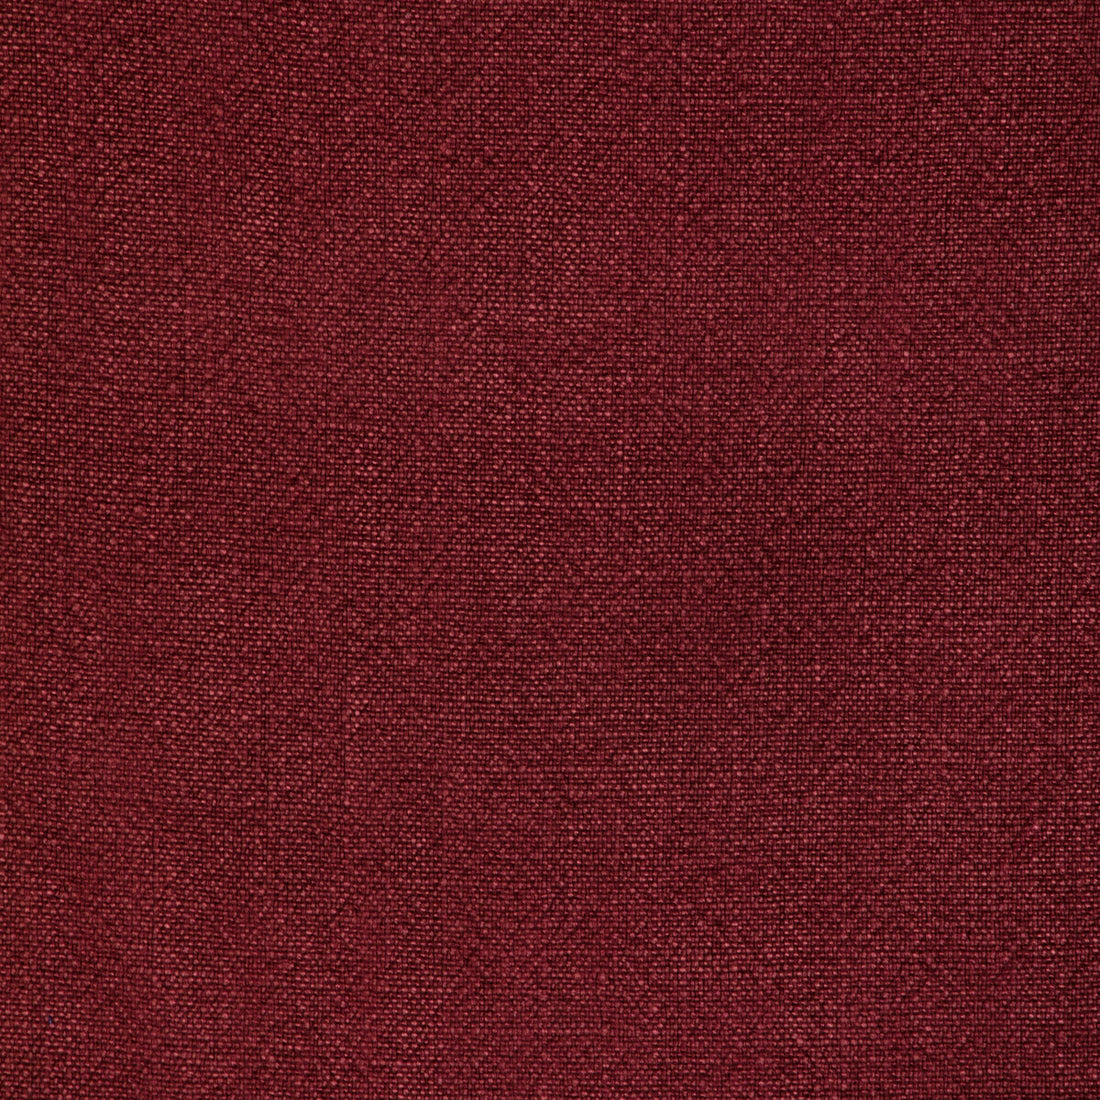 Kravet Basics fabric in 35189-9 color - pattern 35189.9.0 - by Kravet Basics